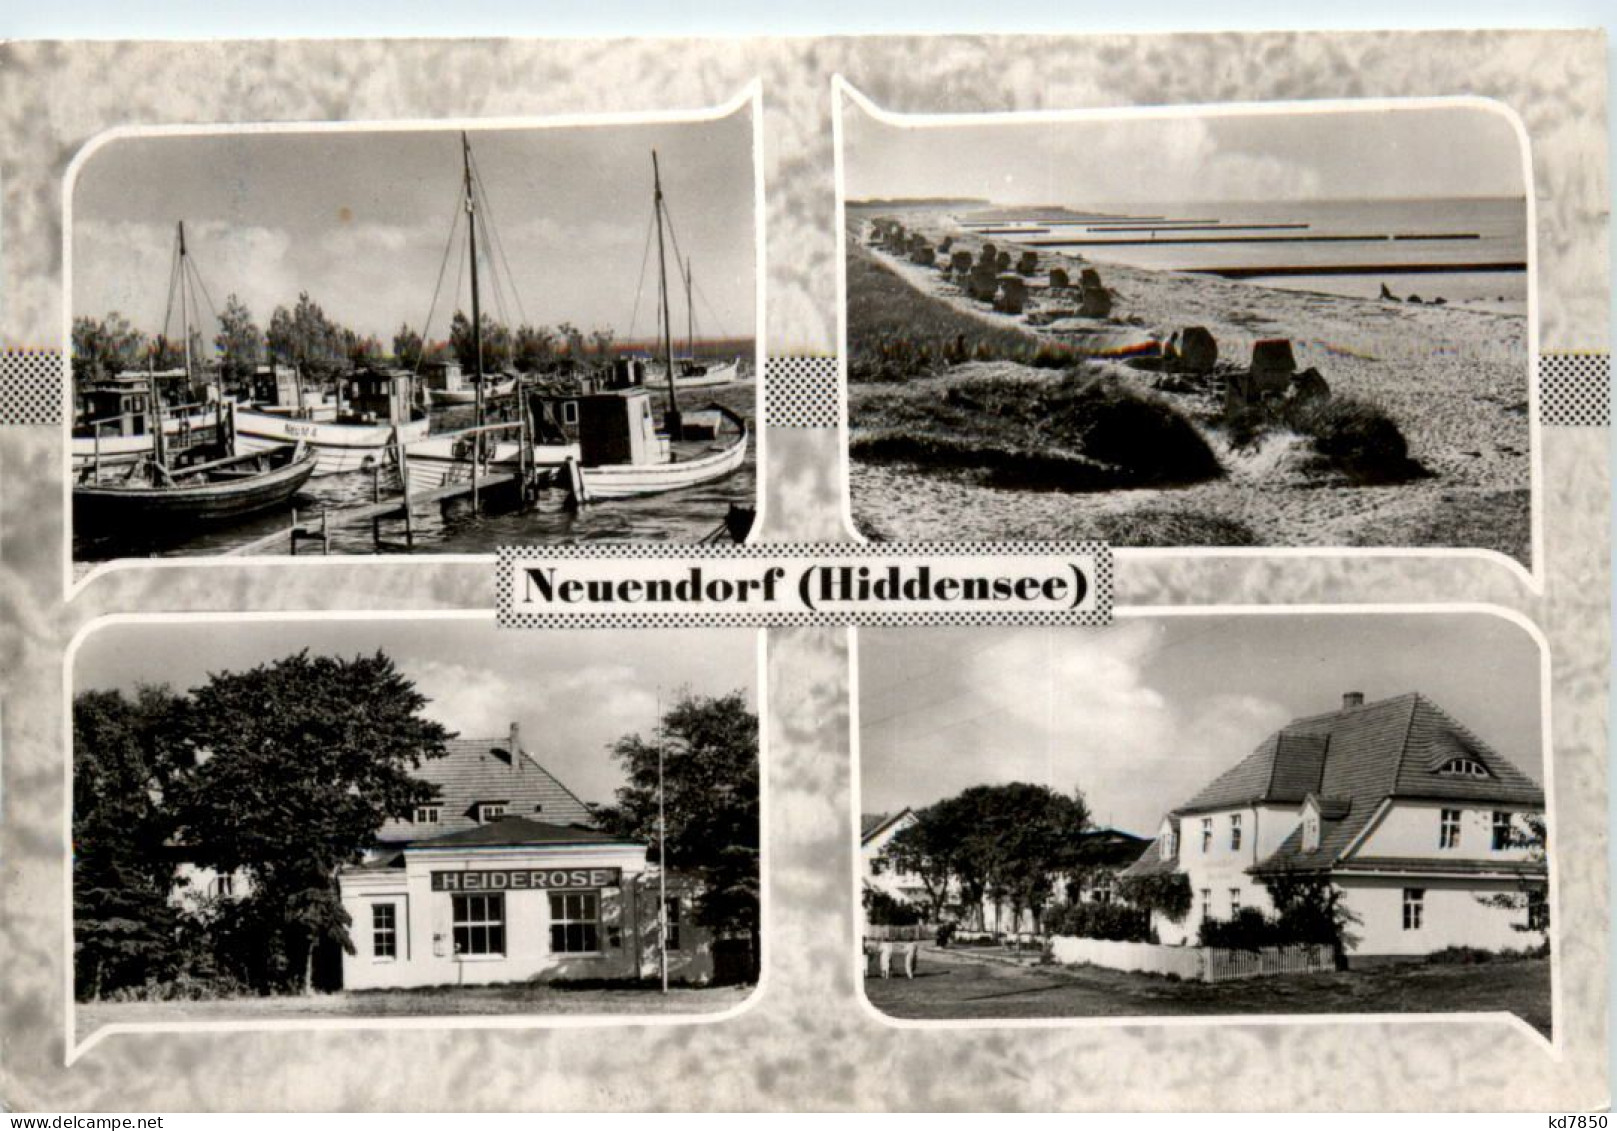 Neuendorf Hiddensee - Hiddensee